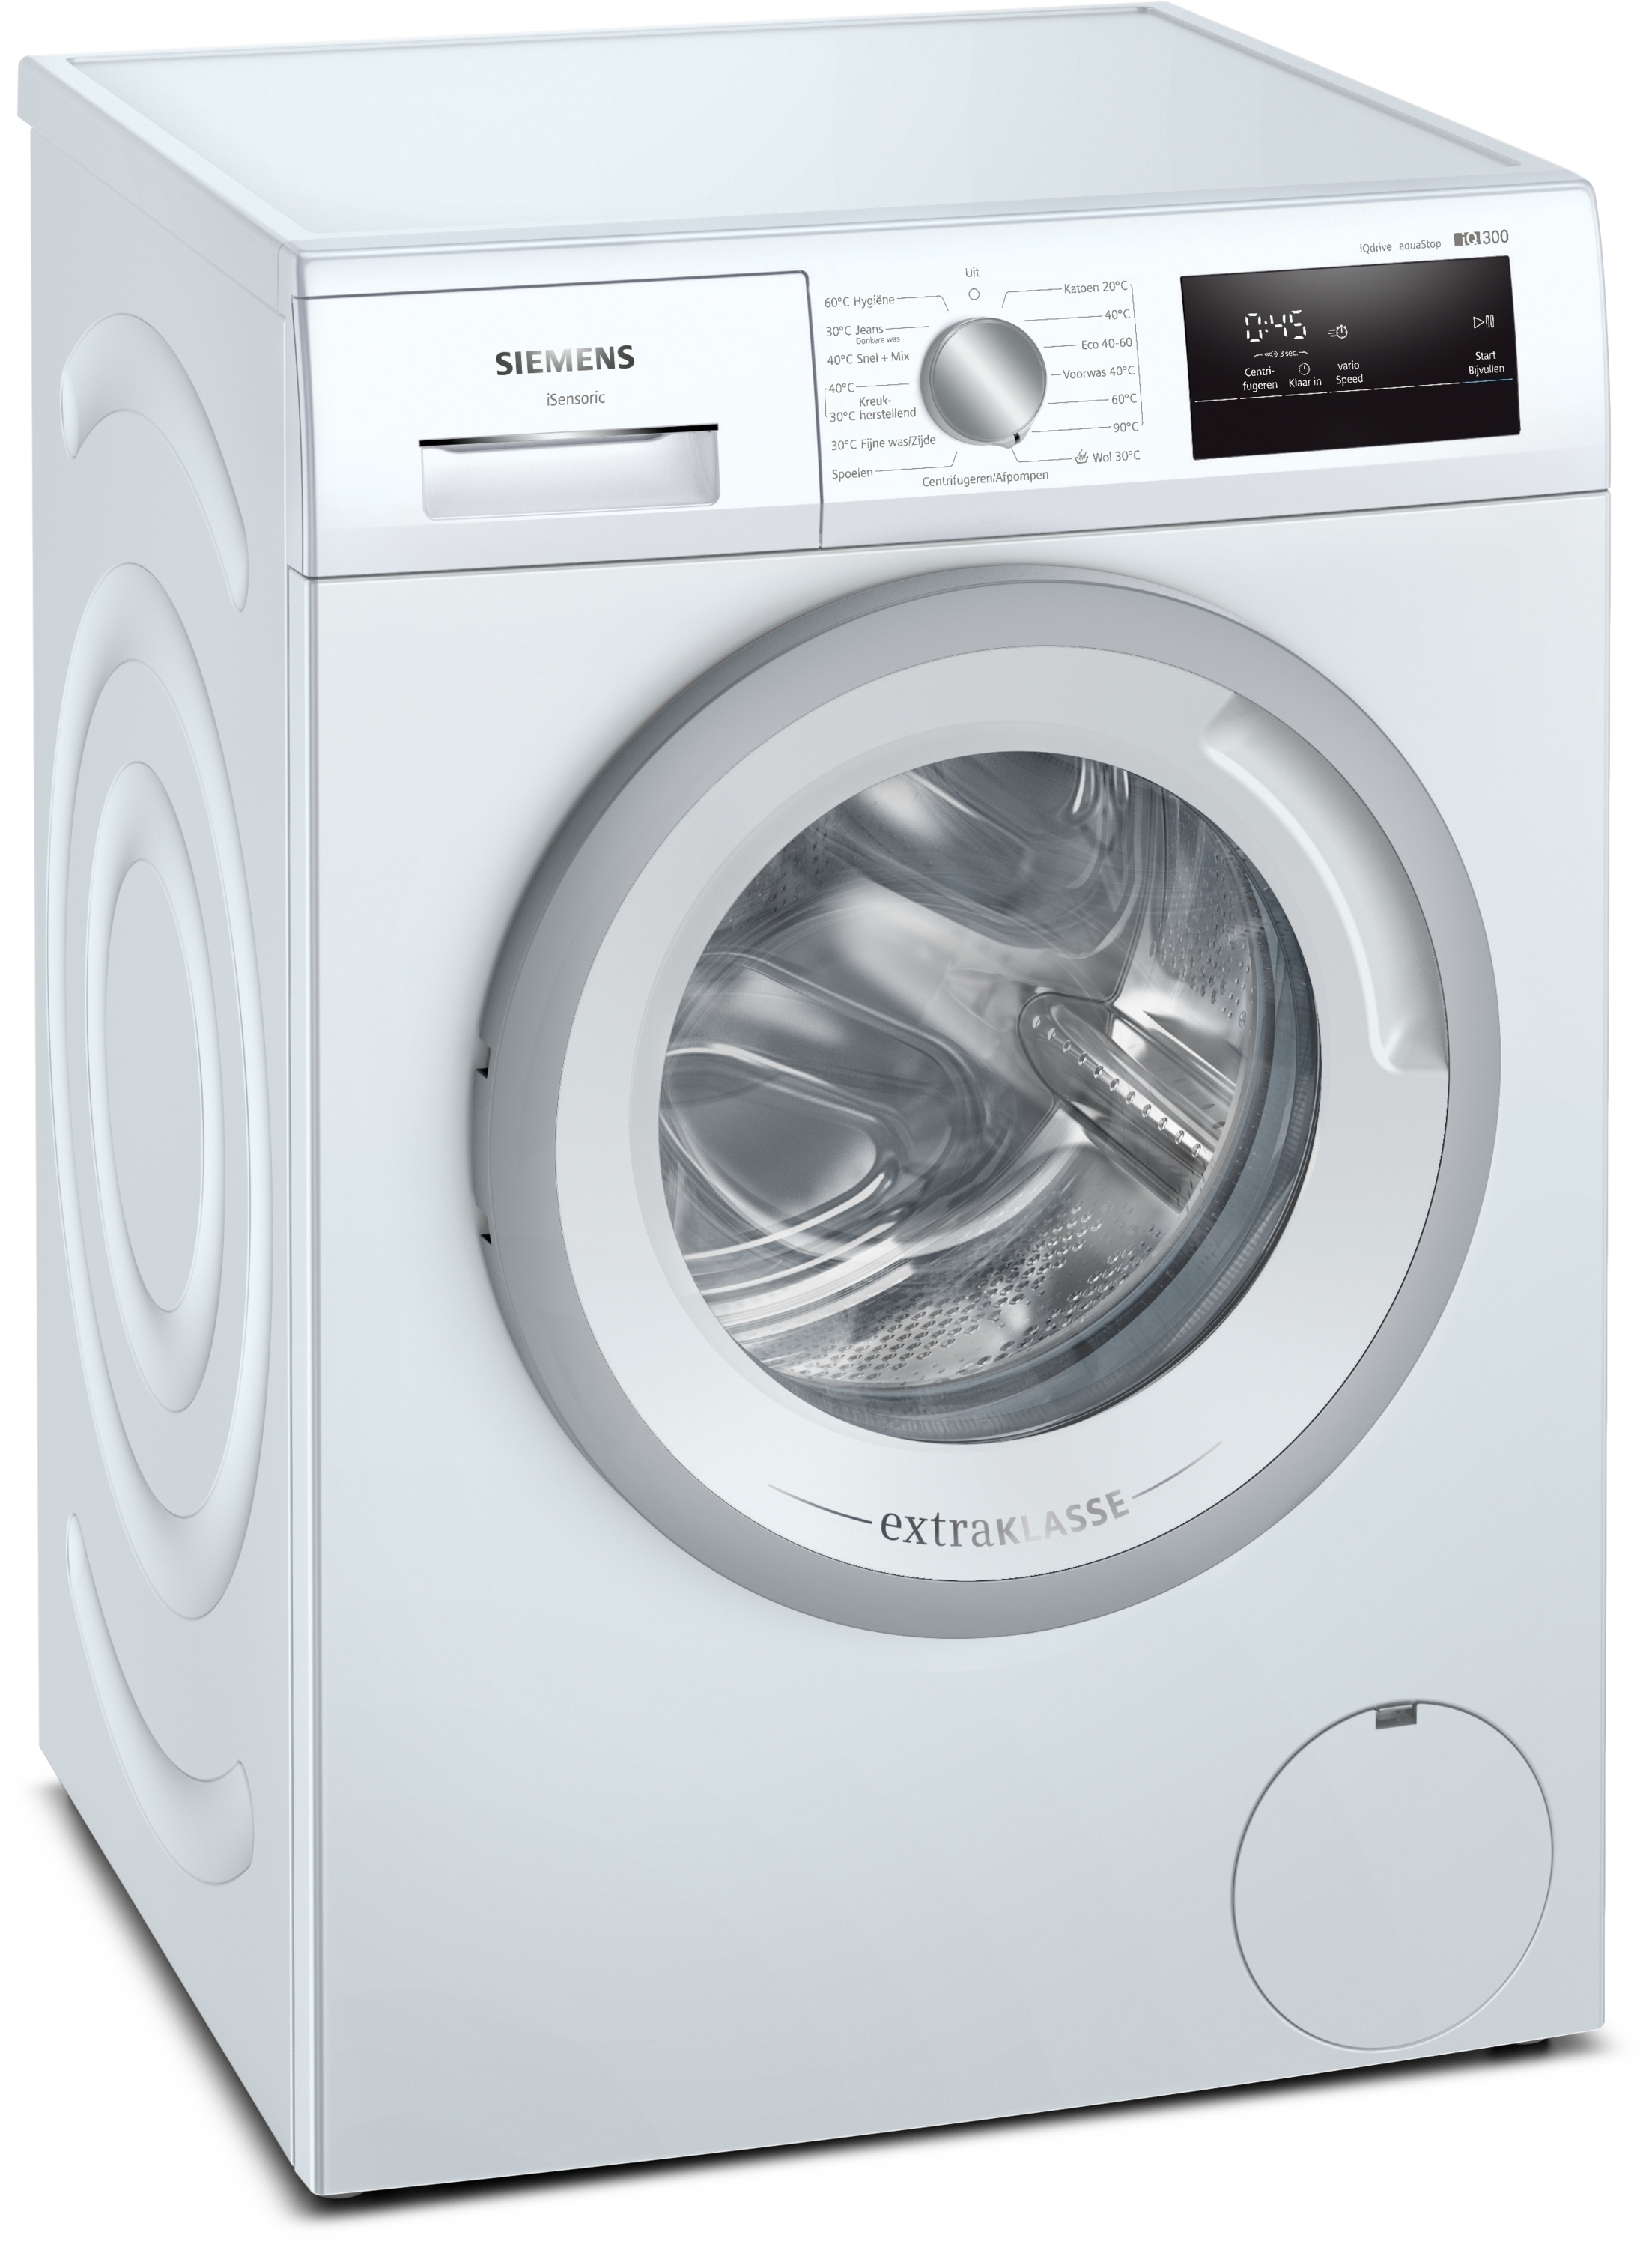 Siemens wasmachine, 7 kg. en 1400 toeren